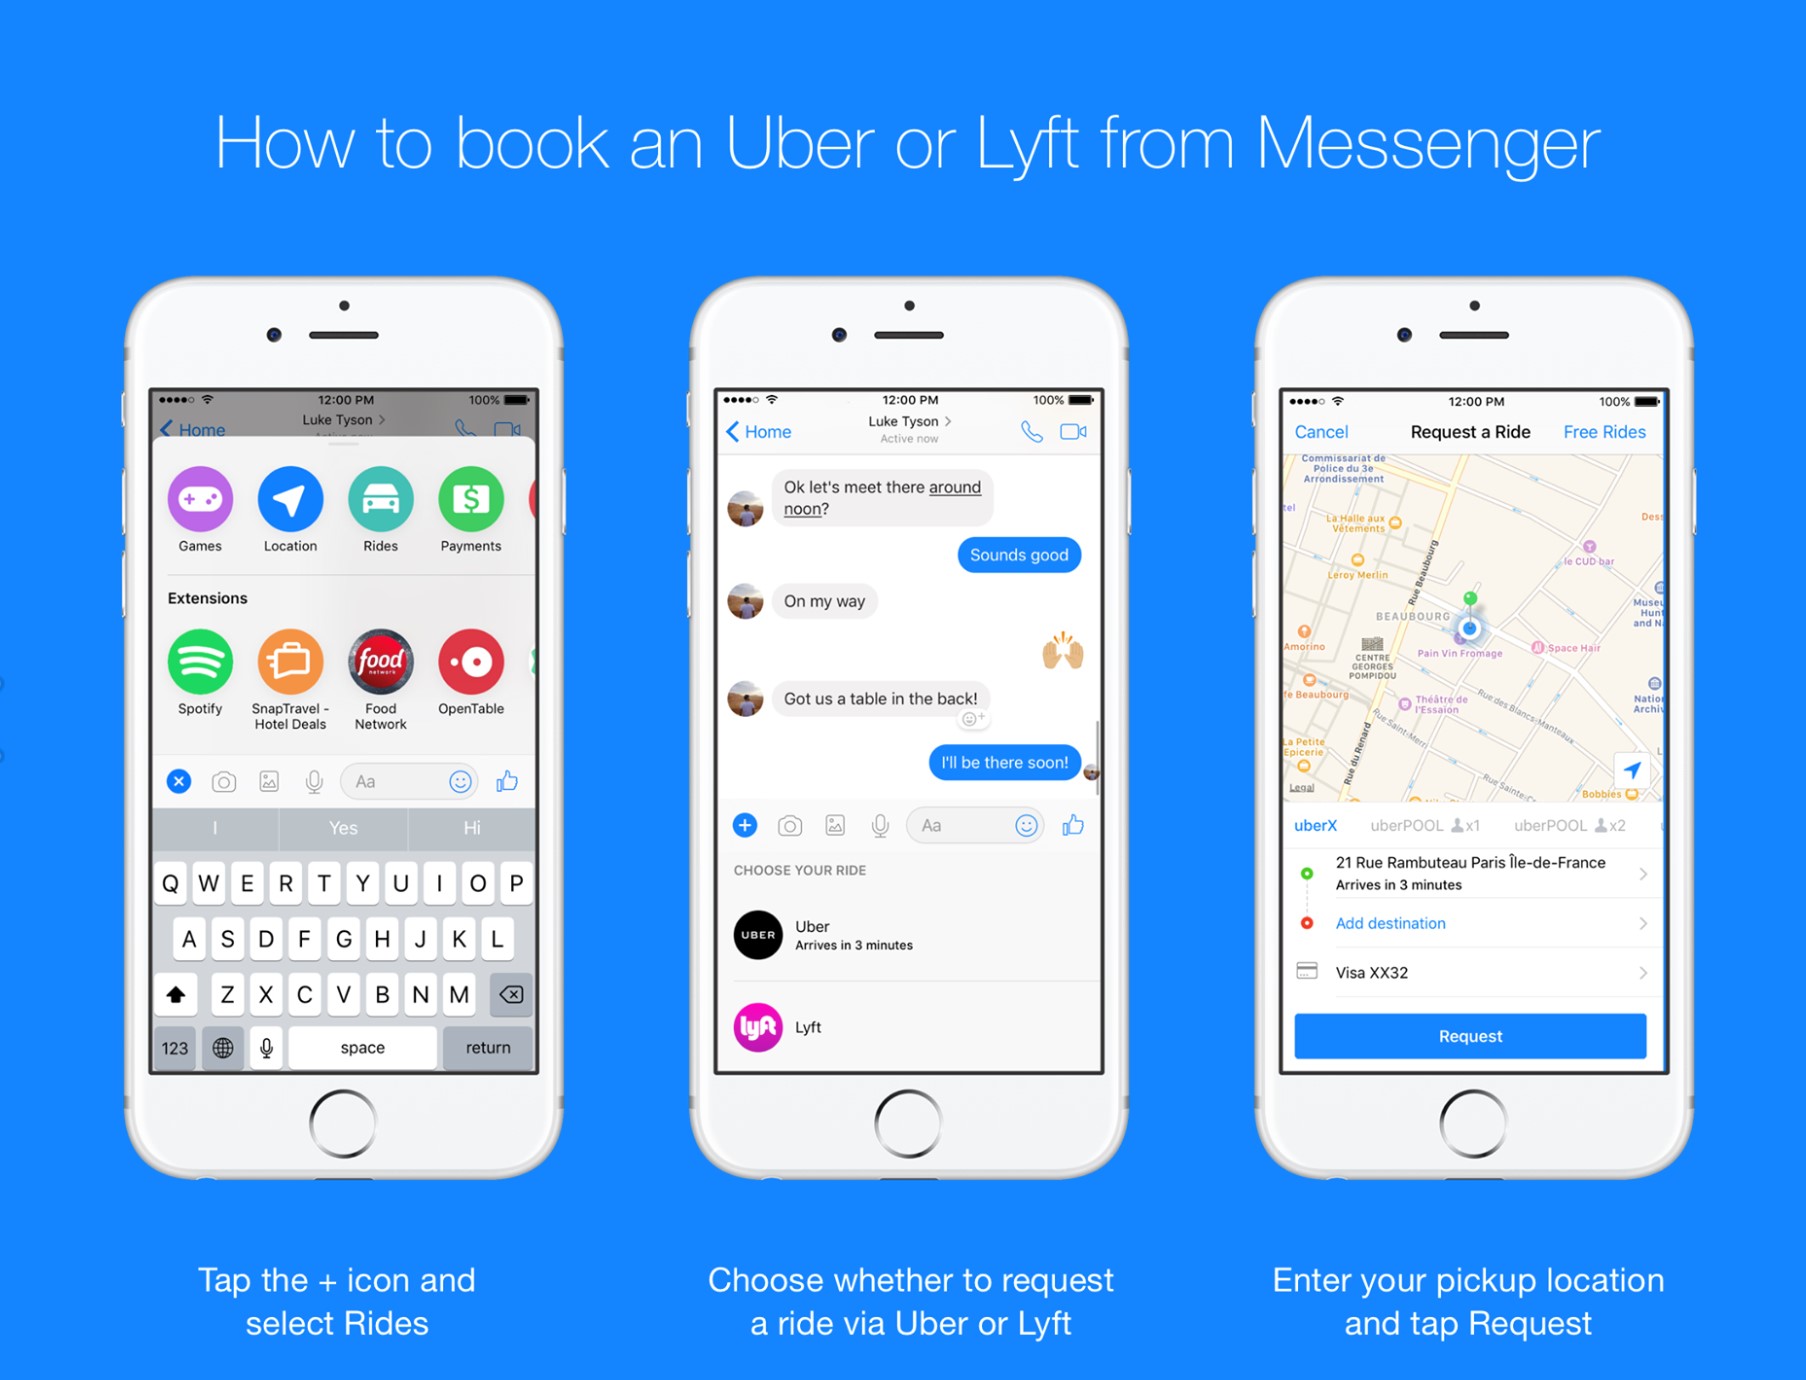 Booking an Uber/Lyft on Facebook Messenger